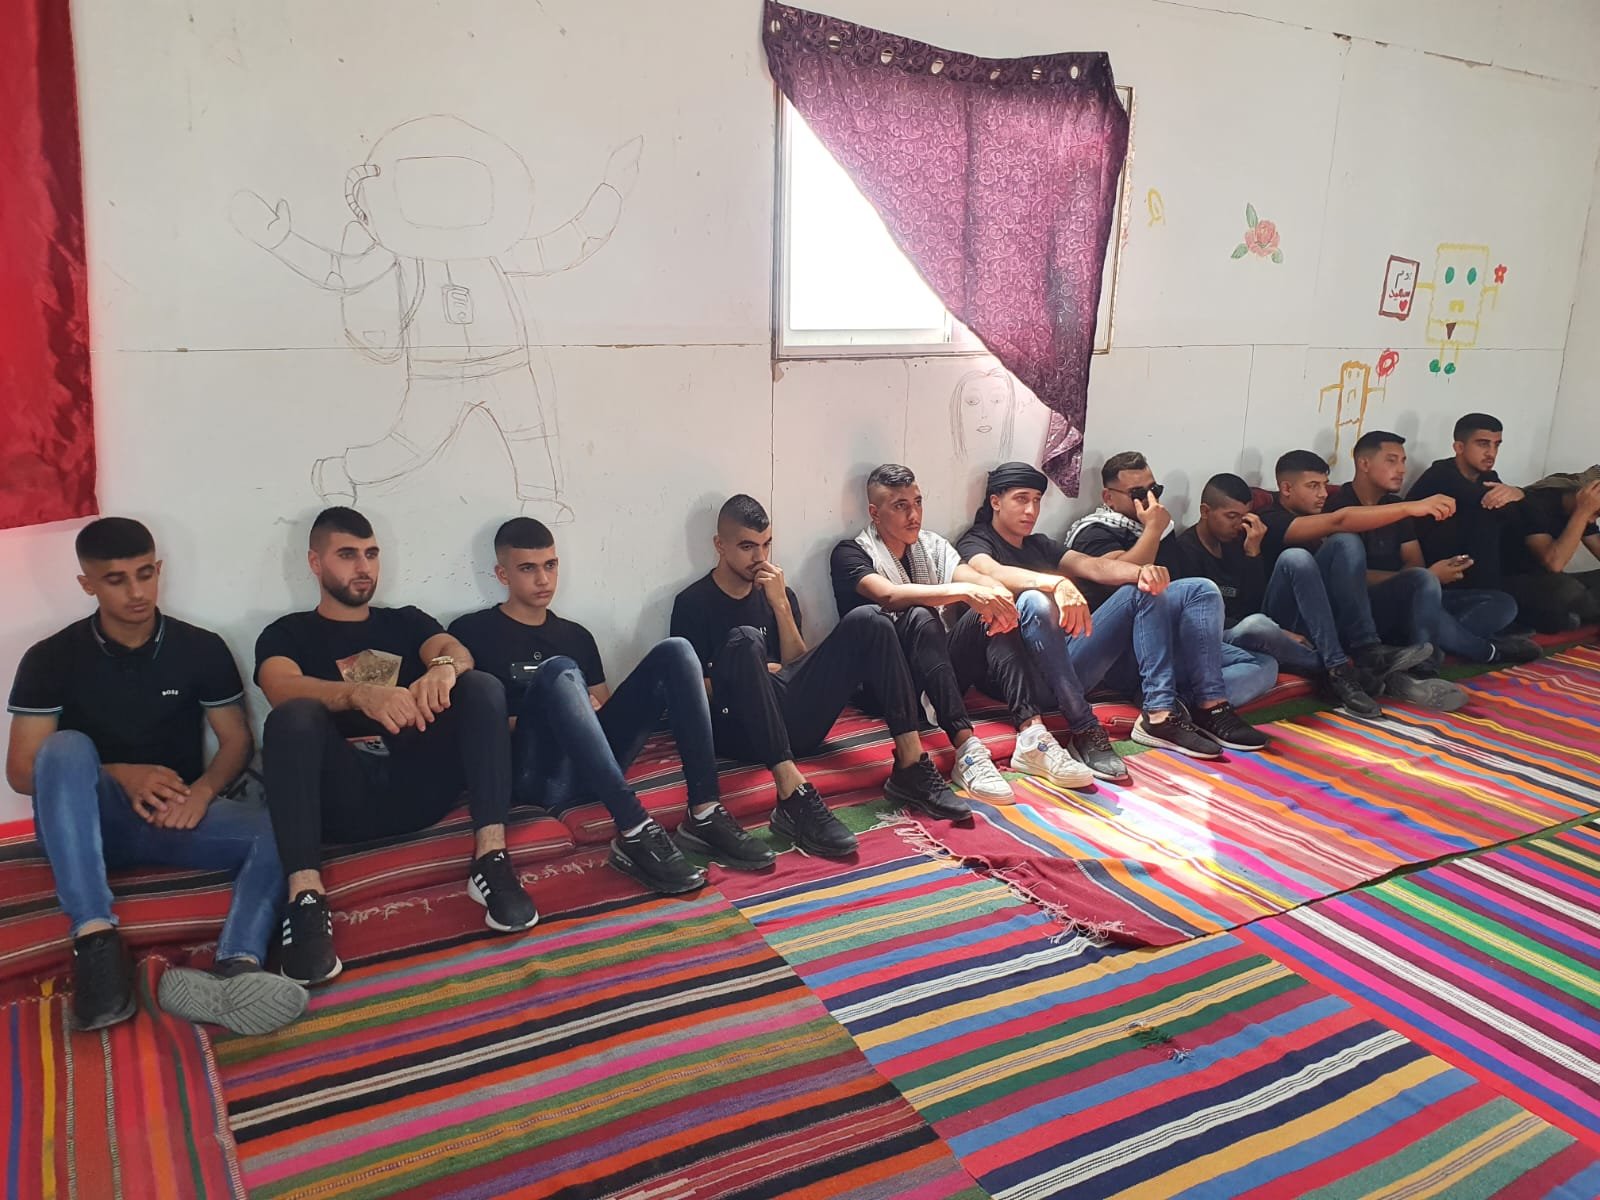 أول مرة لهم في قرية مسلوبة الإعتراف: شباب "صوت واحد" في زيارة لقرية السرة في النقب-7